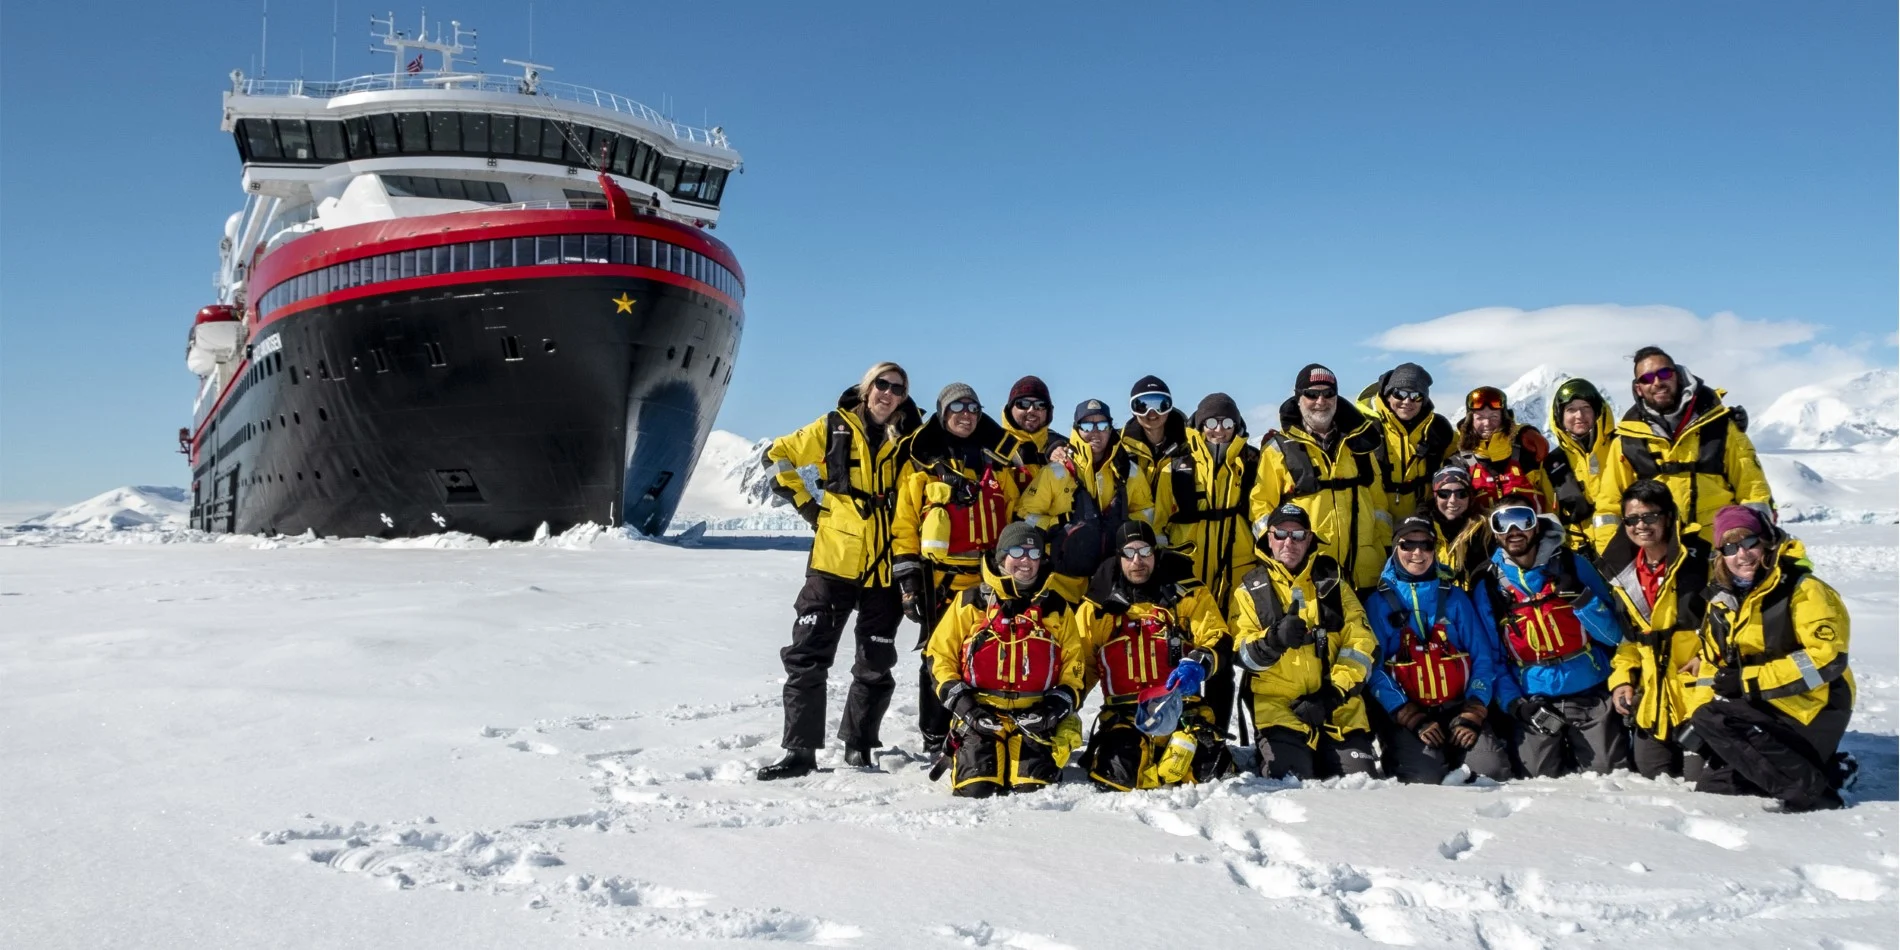 amundsen landing expedition-team antarctica 